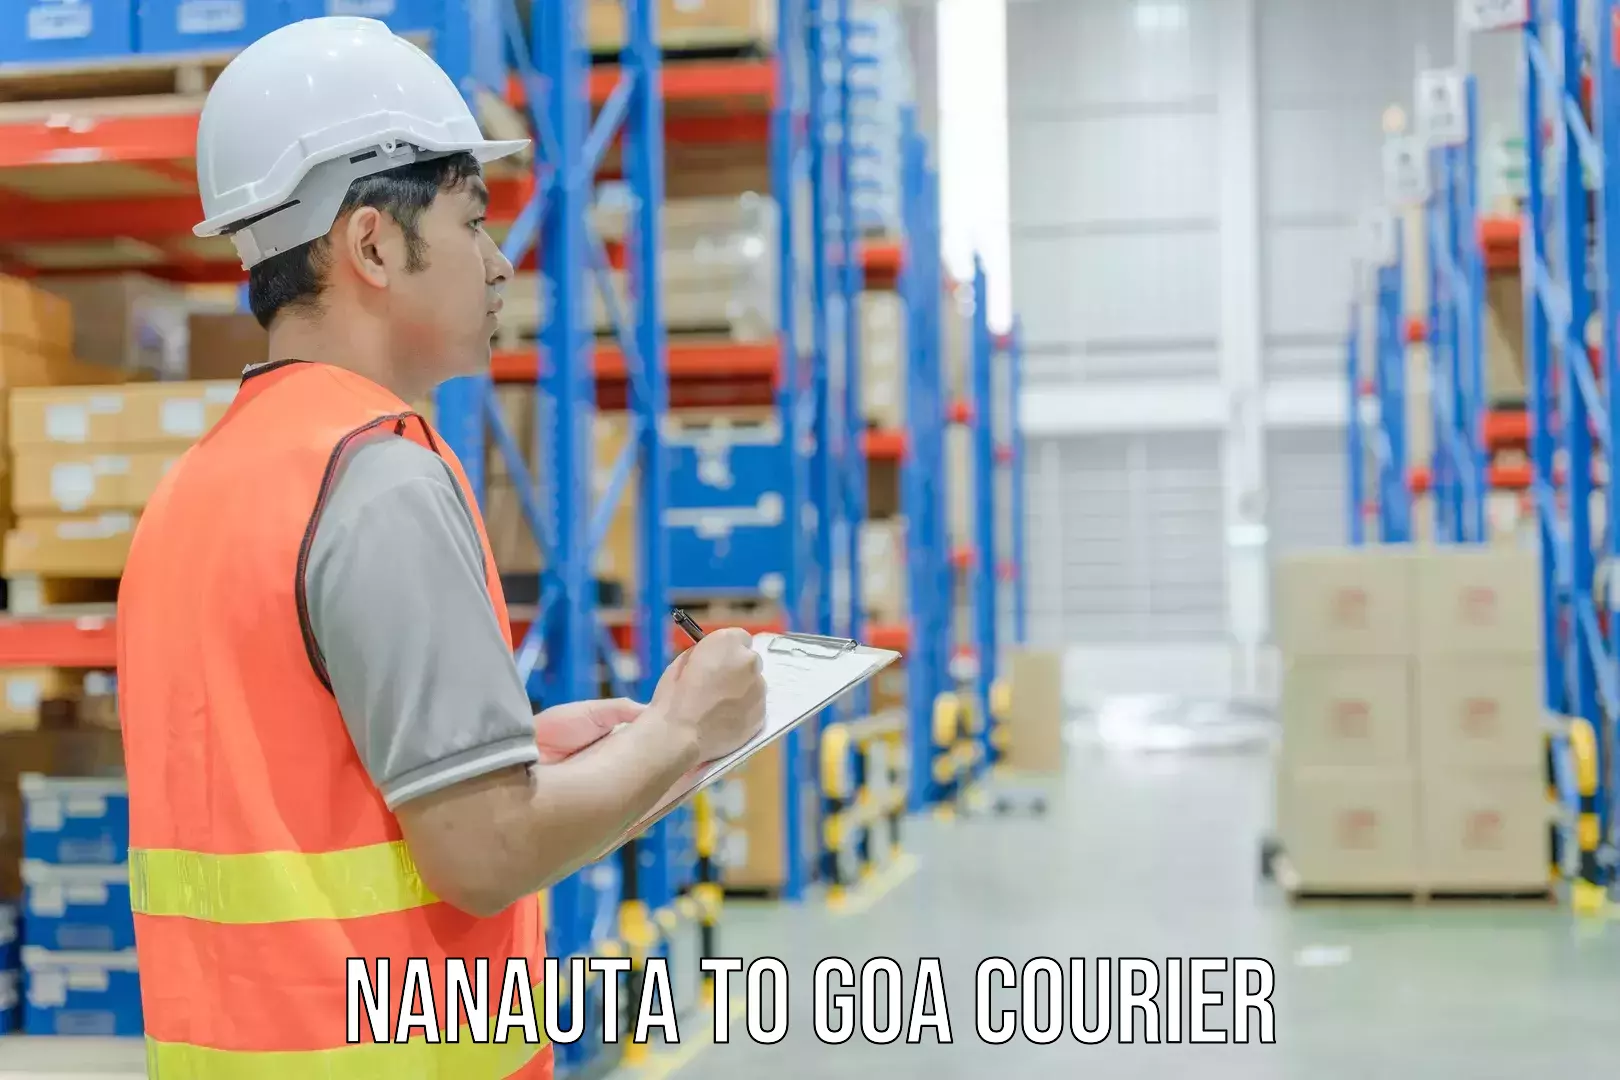 Custom courier strategies Nanauta to Goa